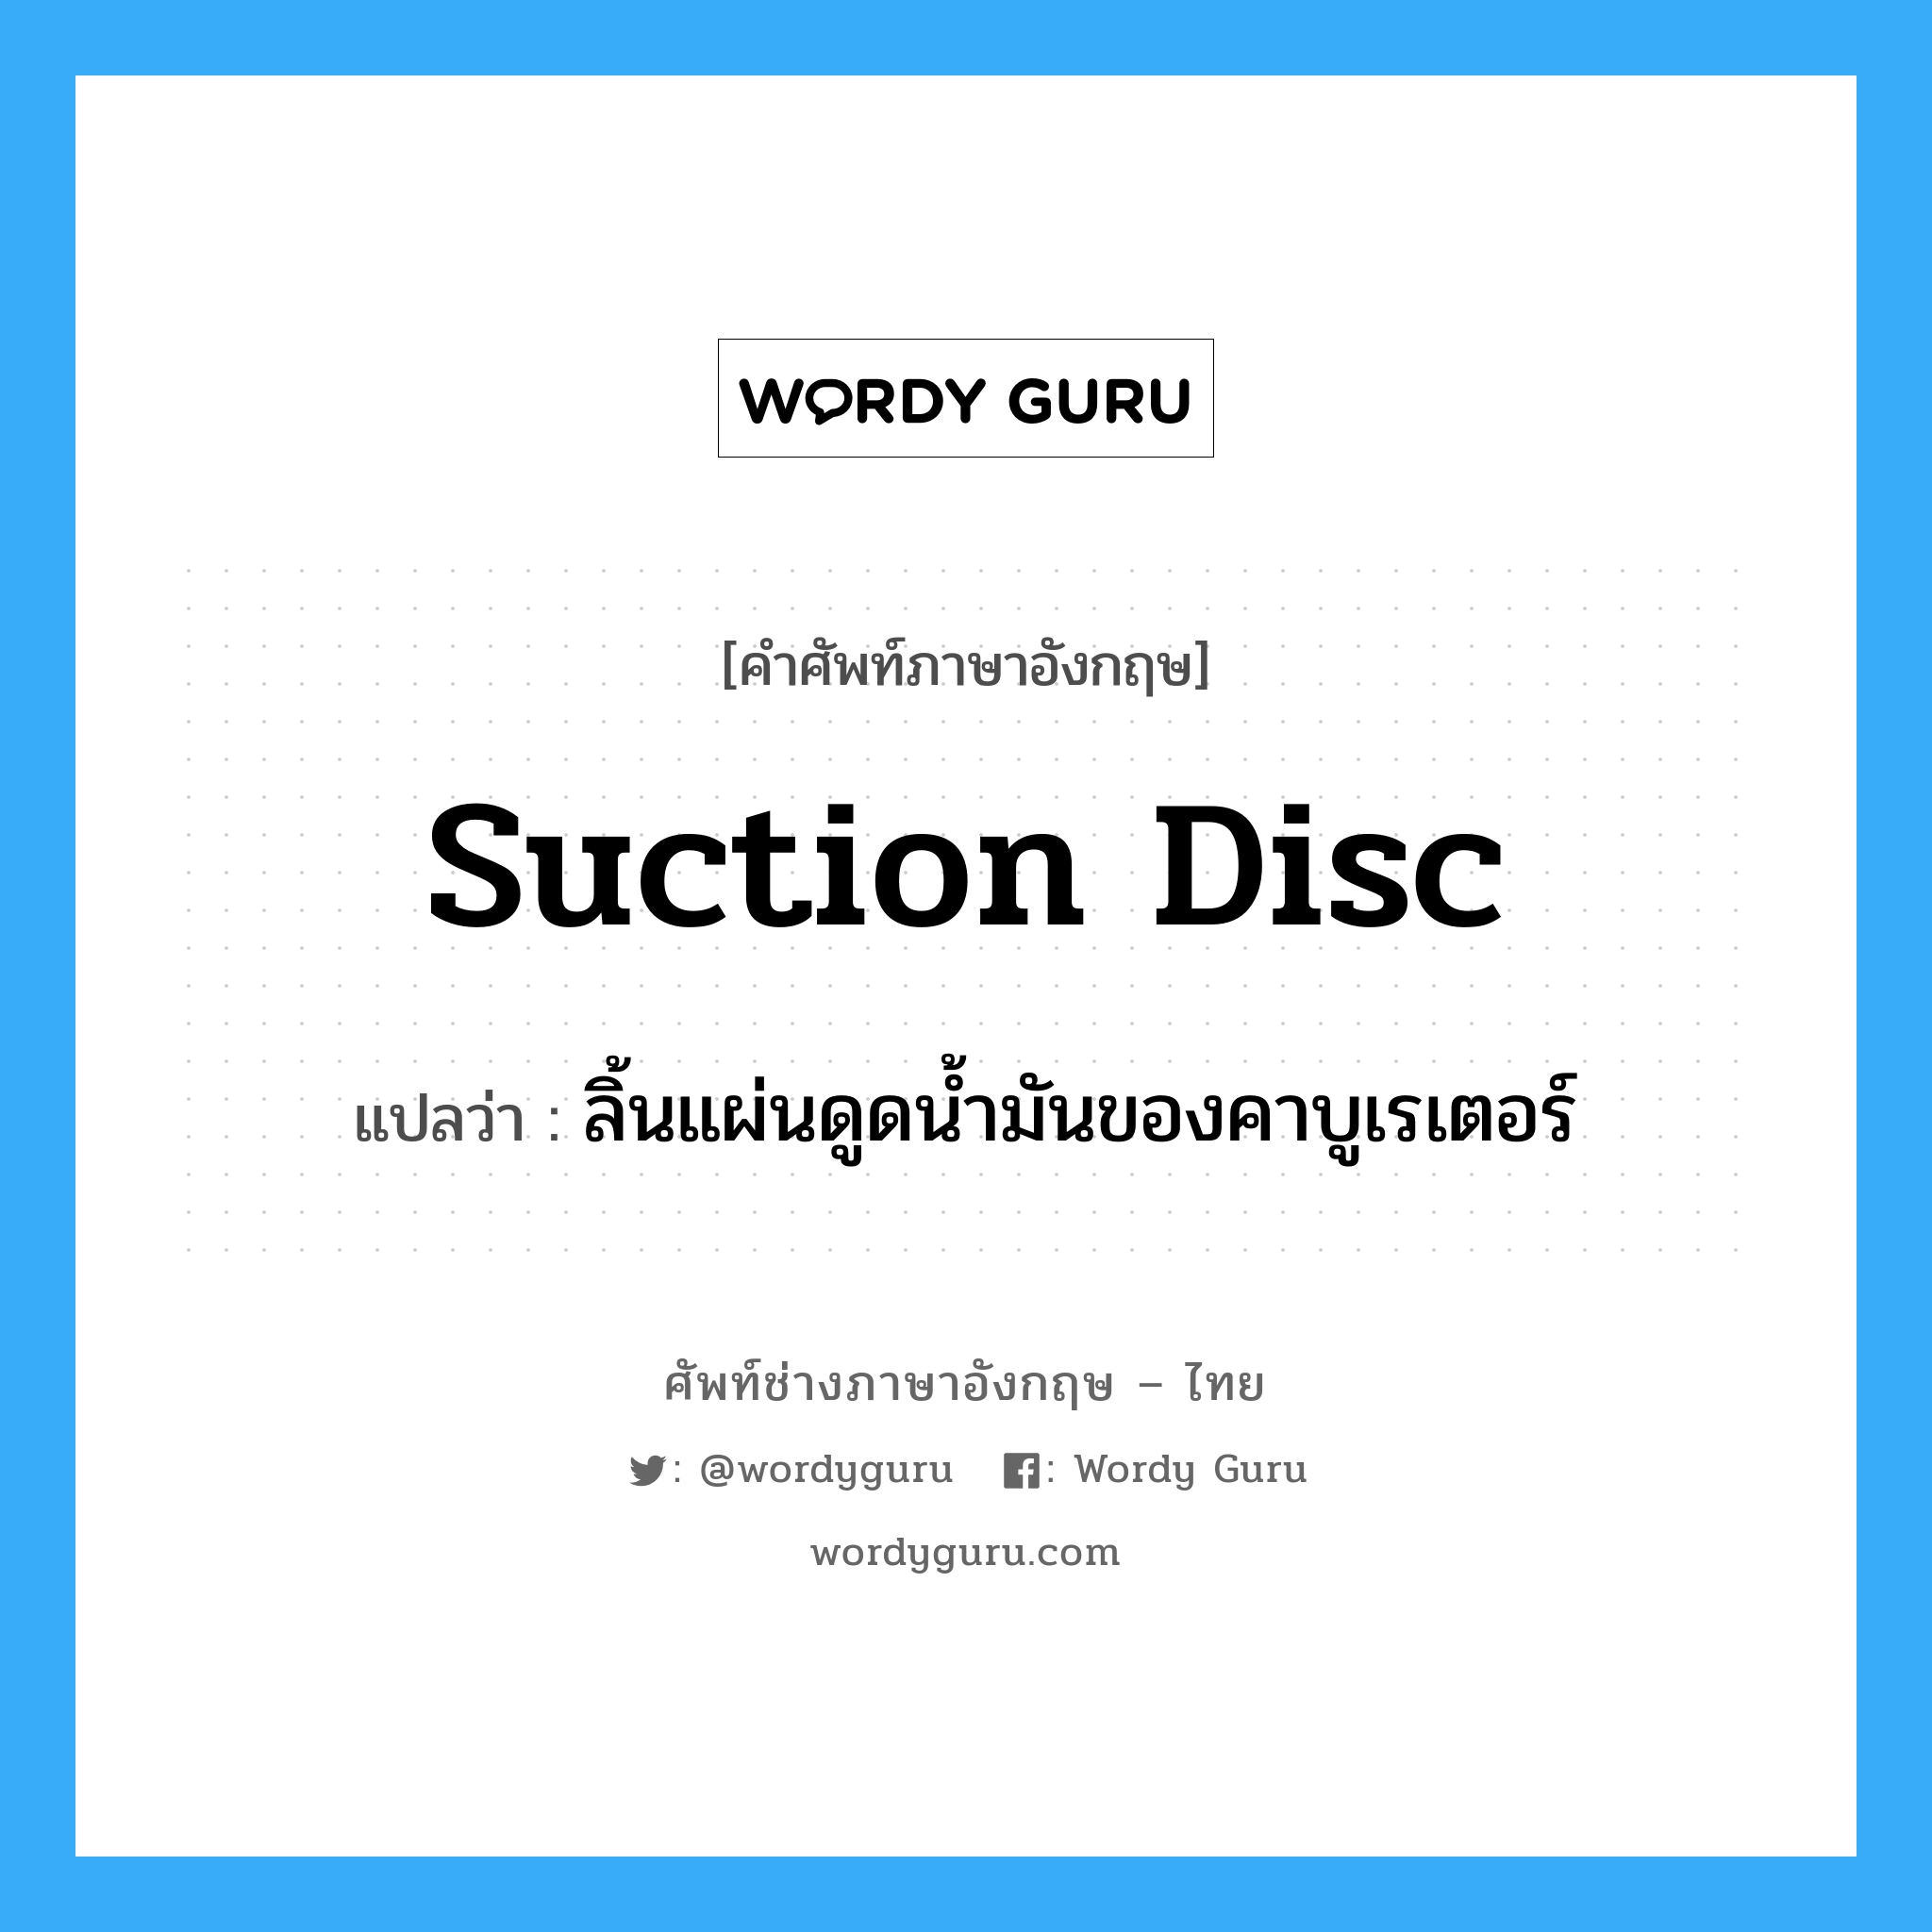 suction disc แปลว่า?, คำศัพท์ช่างภาษาอังกฤษ - ไทย suction disc คำศัพท์ภาษาอังกฤษ suction disc แปลว่า ลิ้นแผ่นดูดน้ำมันของคาบูเรเตอร์